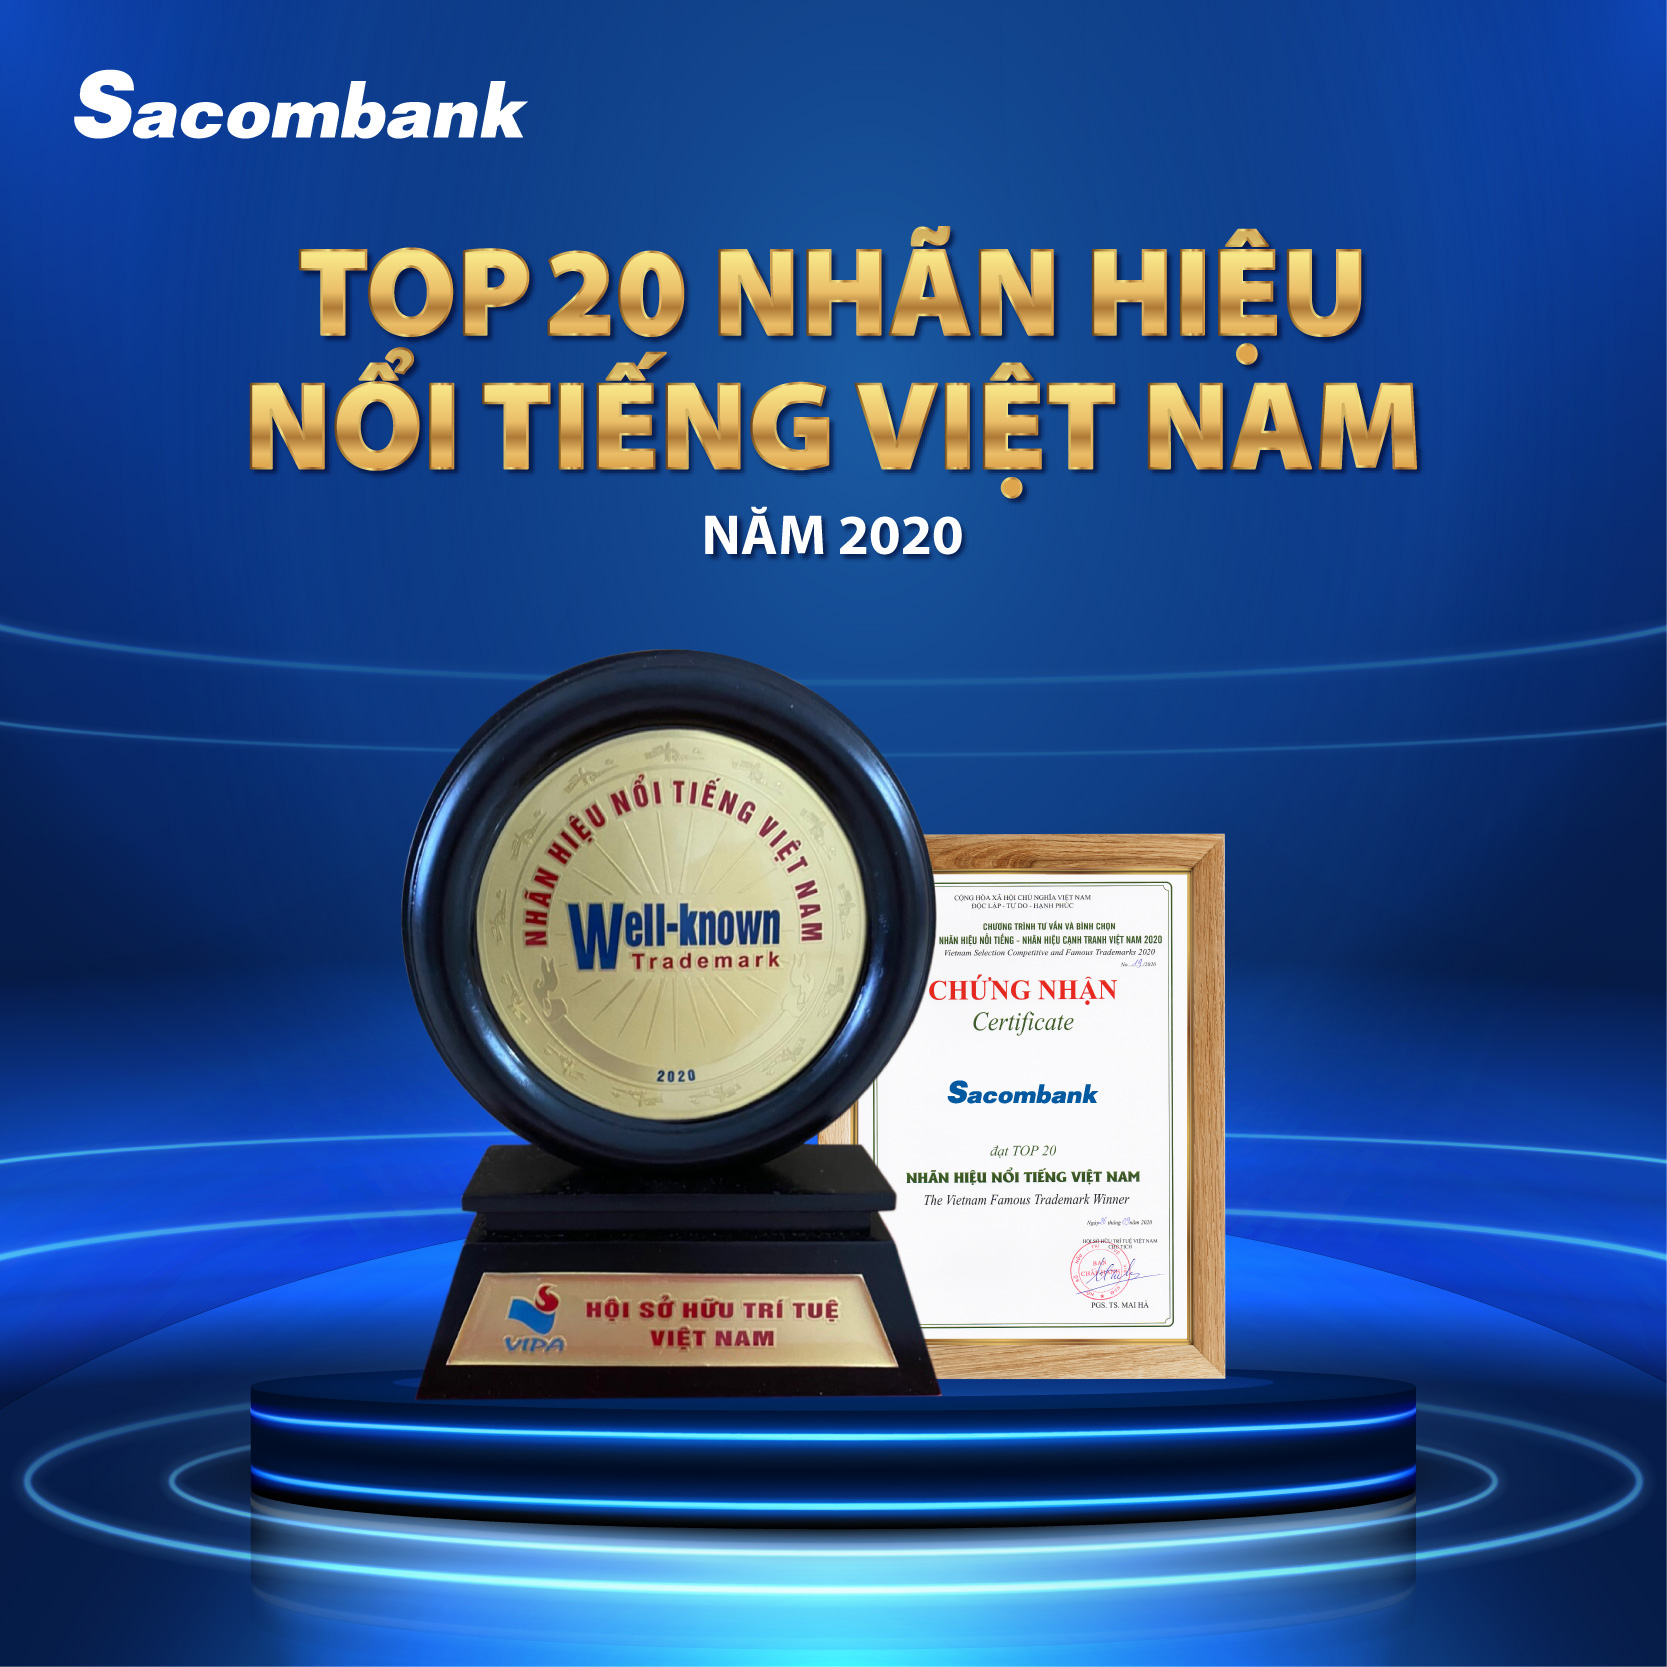 Sacombank vào Top 20 nhãn hiệu nổi tiếng Việt Nam - Ảnh 1.